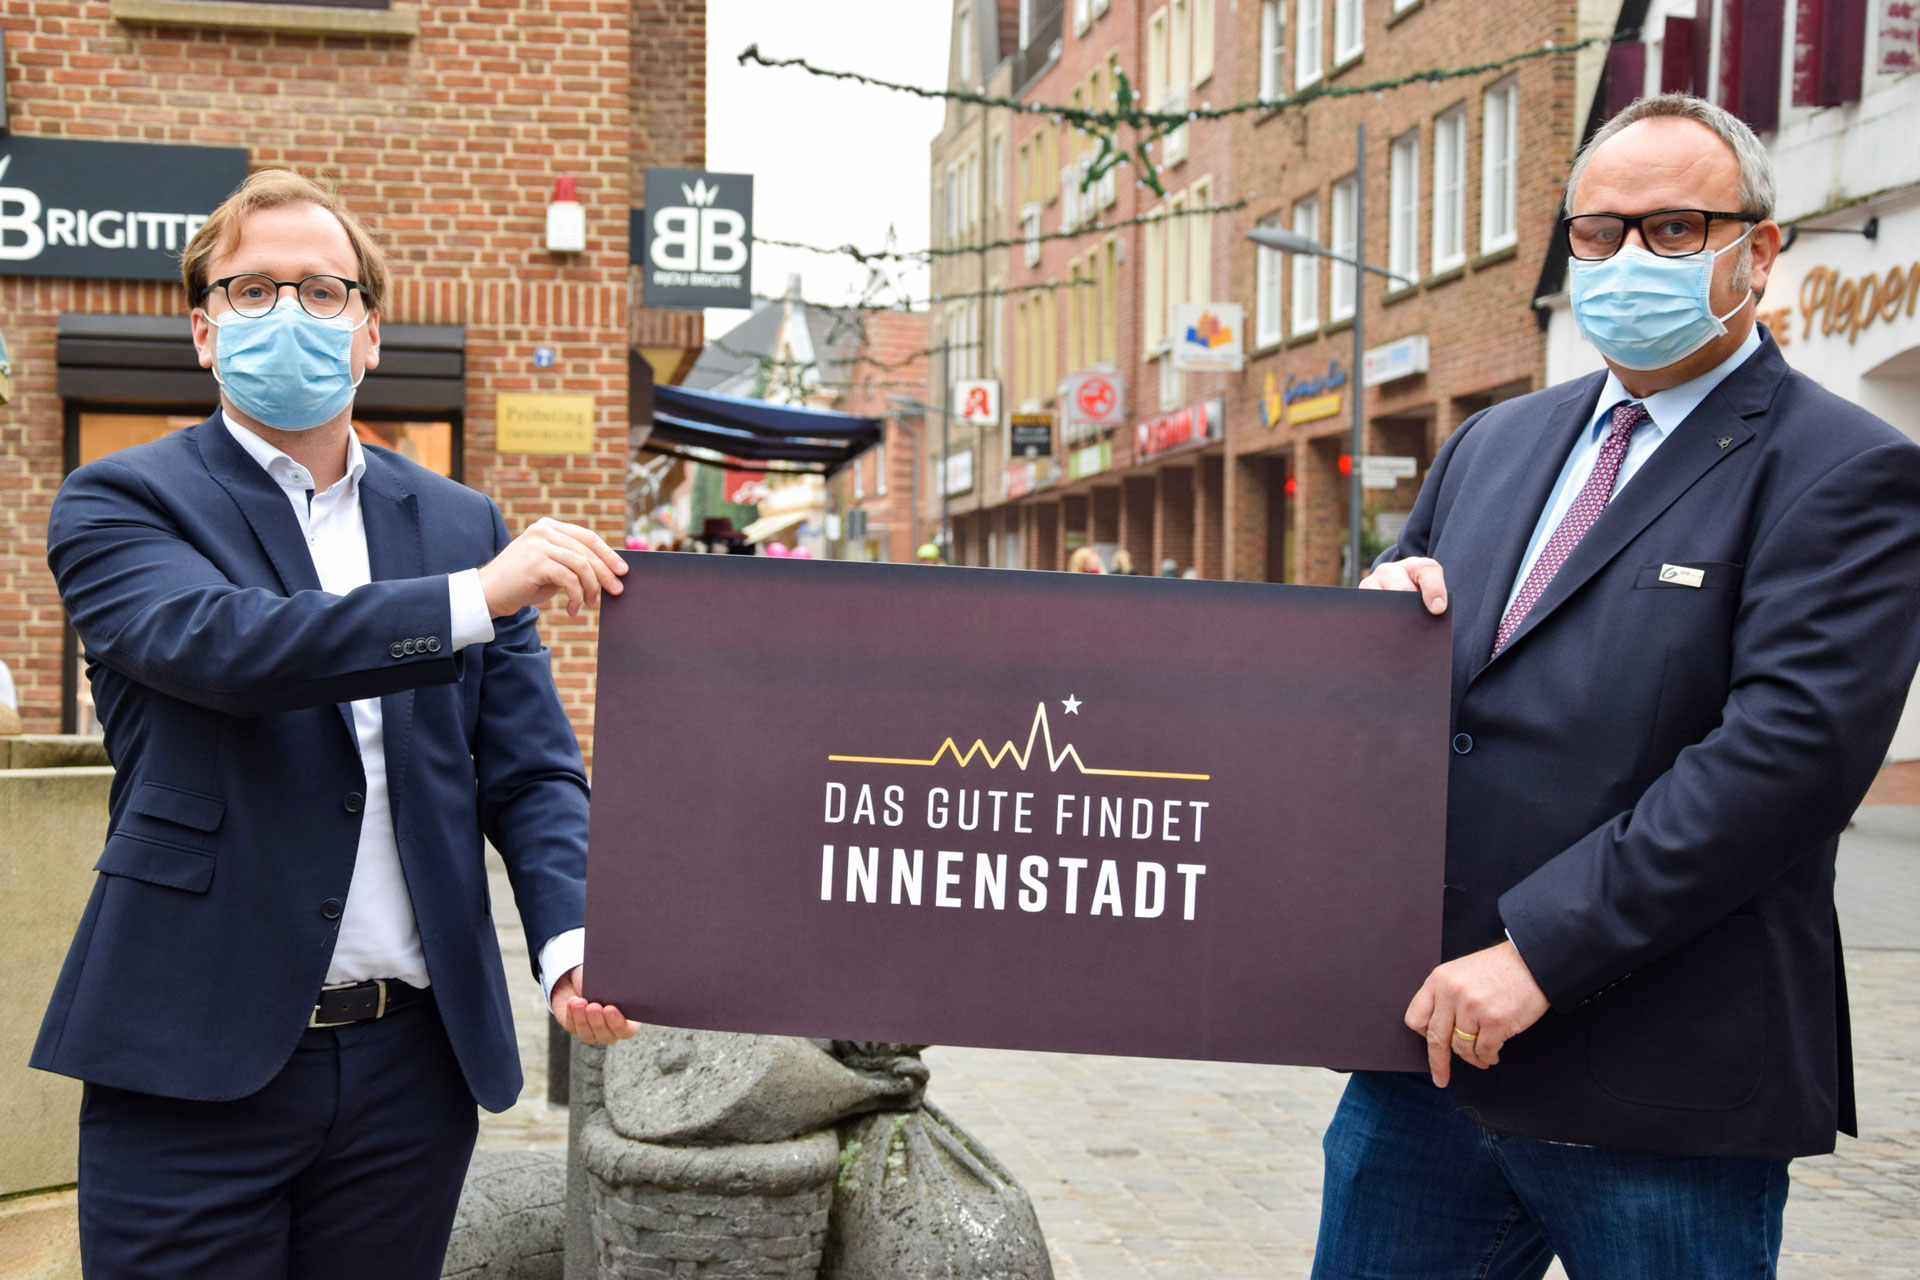 Bürgermeister Dietrich Aden (links) und Wirtschaftsförderer Stefan Deimann wollen die Grevener Innenstadt stärken.